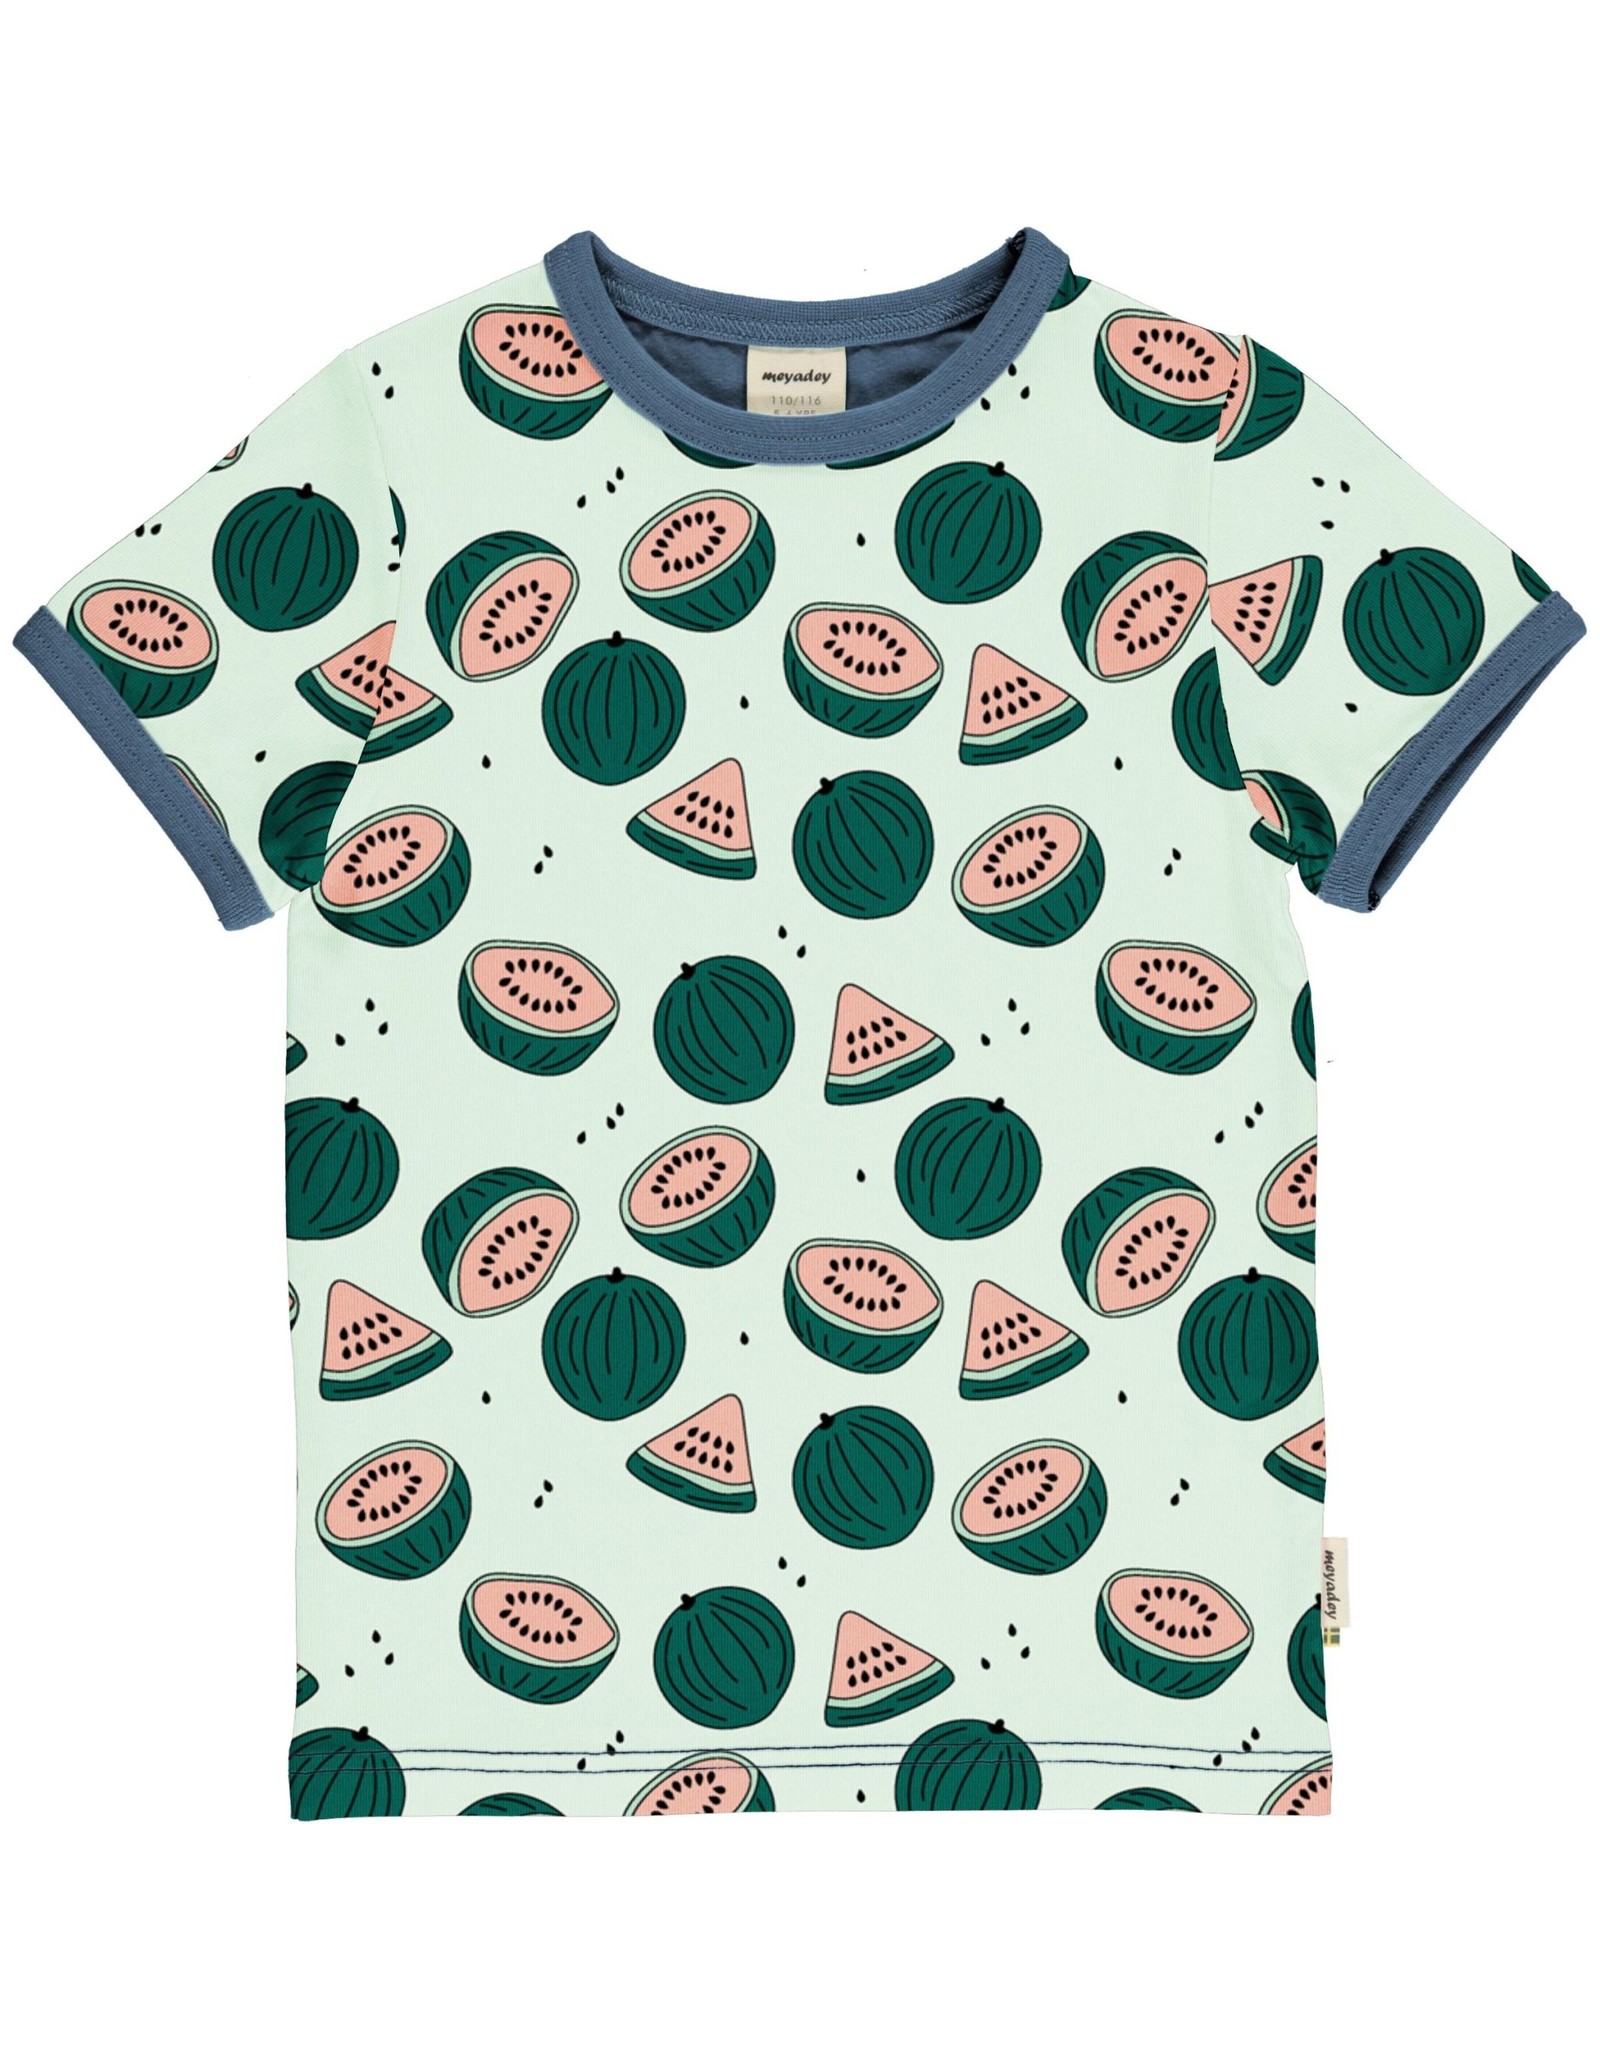 Meyadey T-shirt met watermeloen